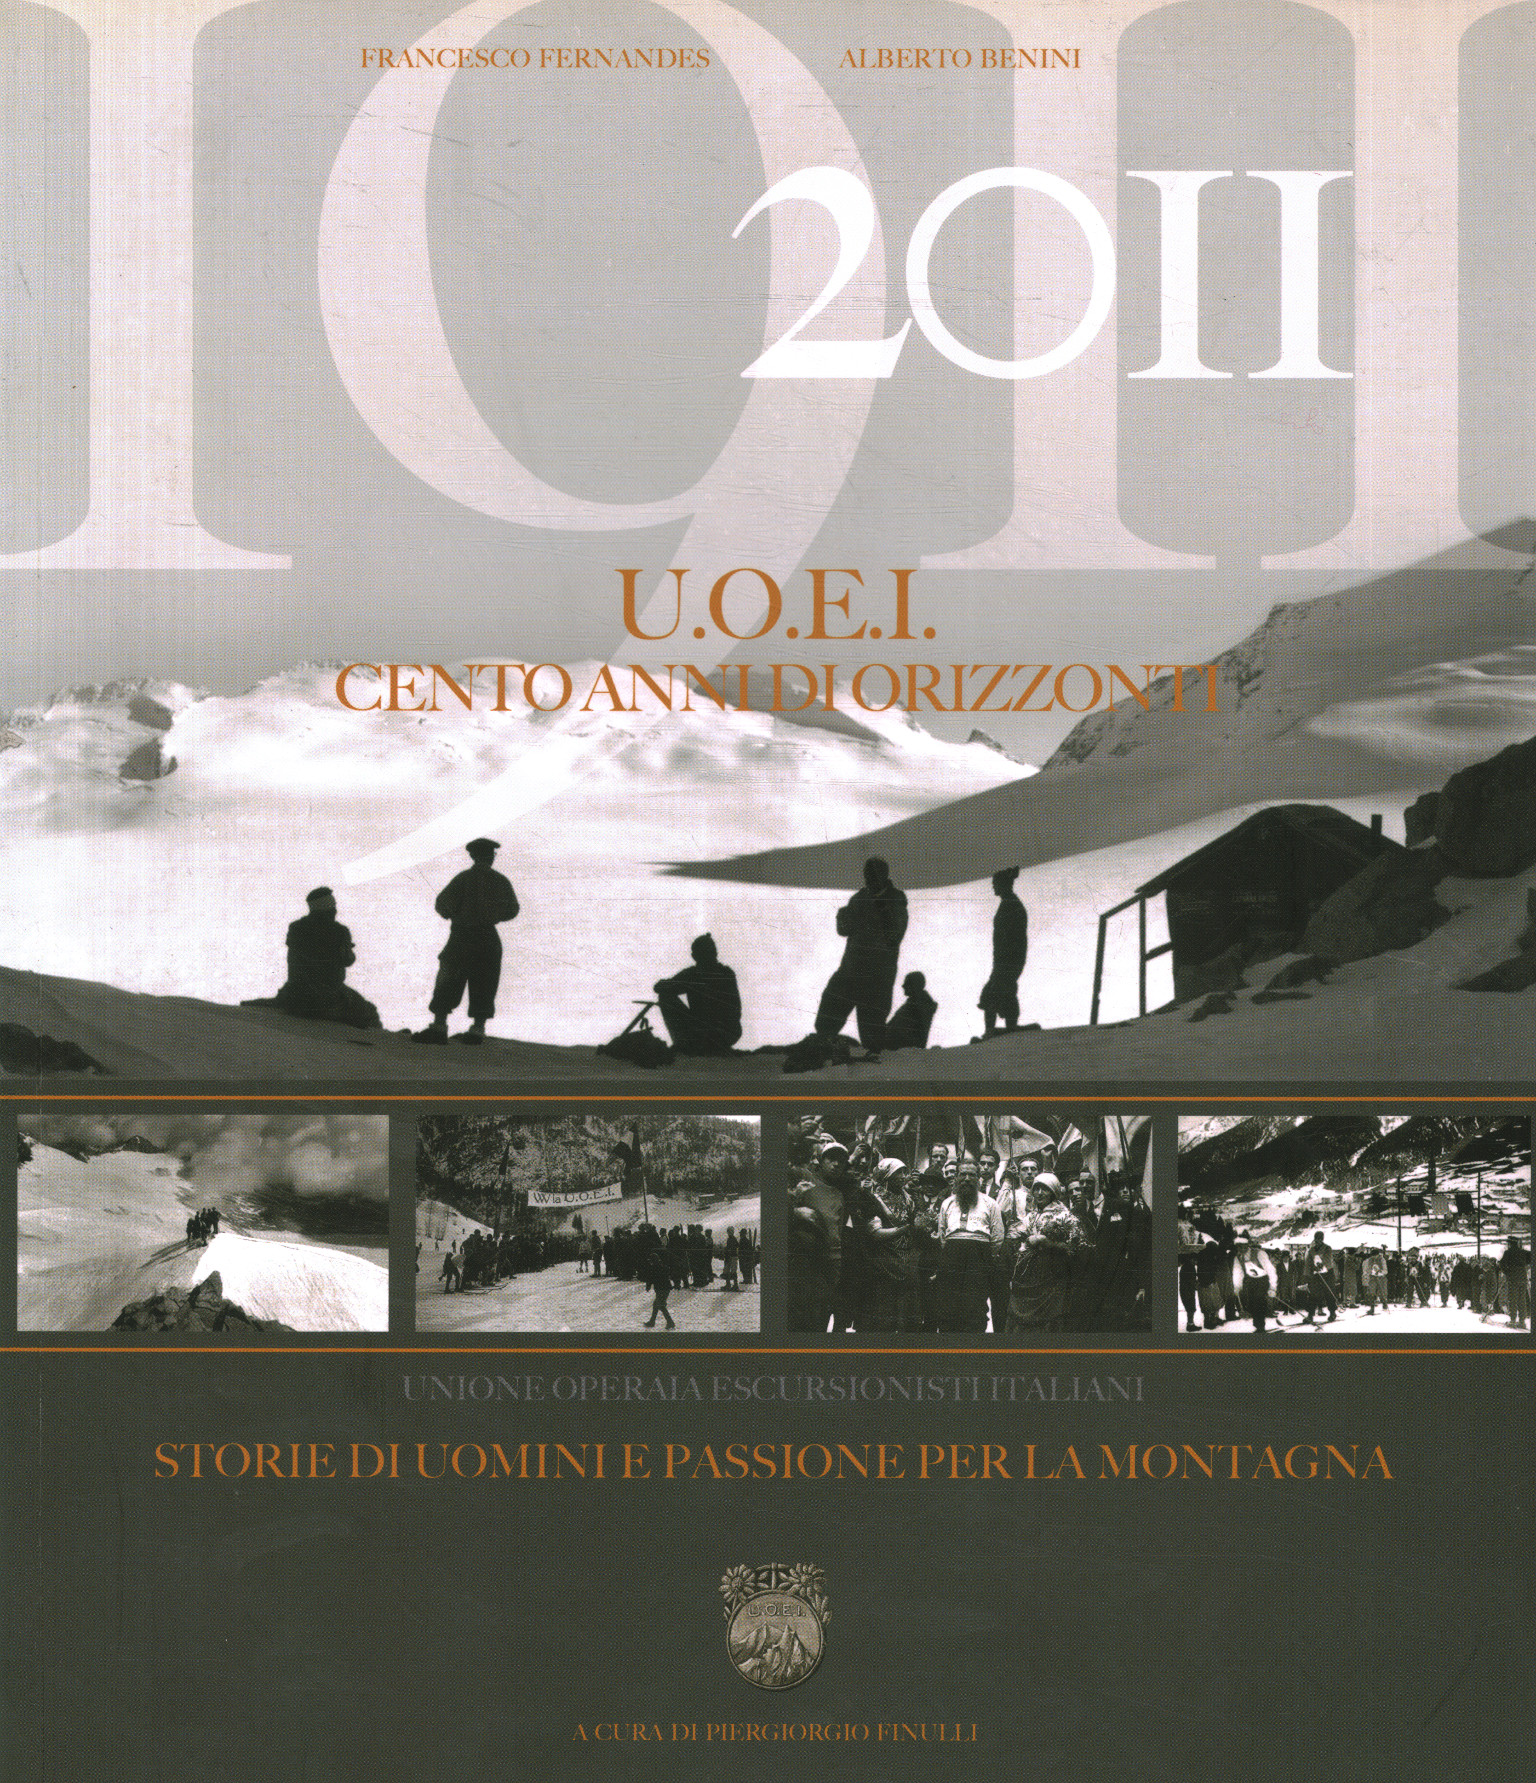 1911-2011 U.O.E.I. Cento anni di orizzon